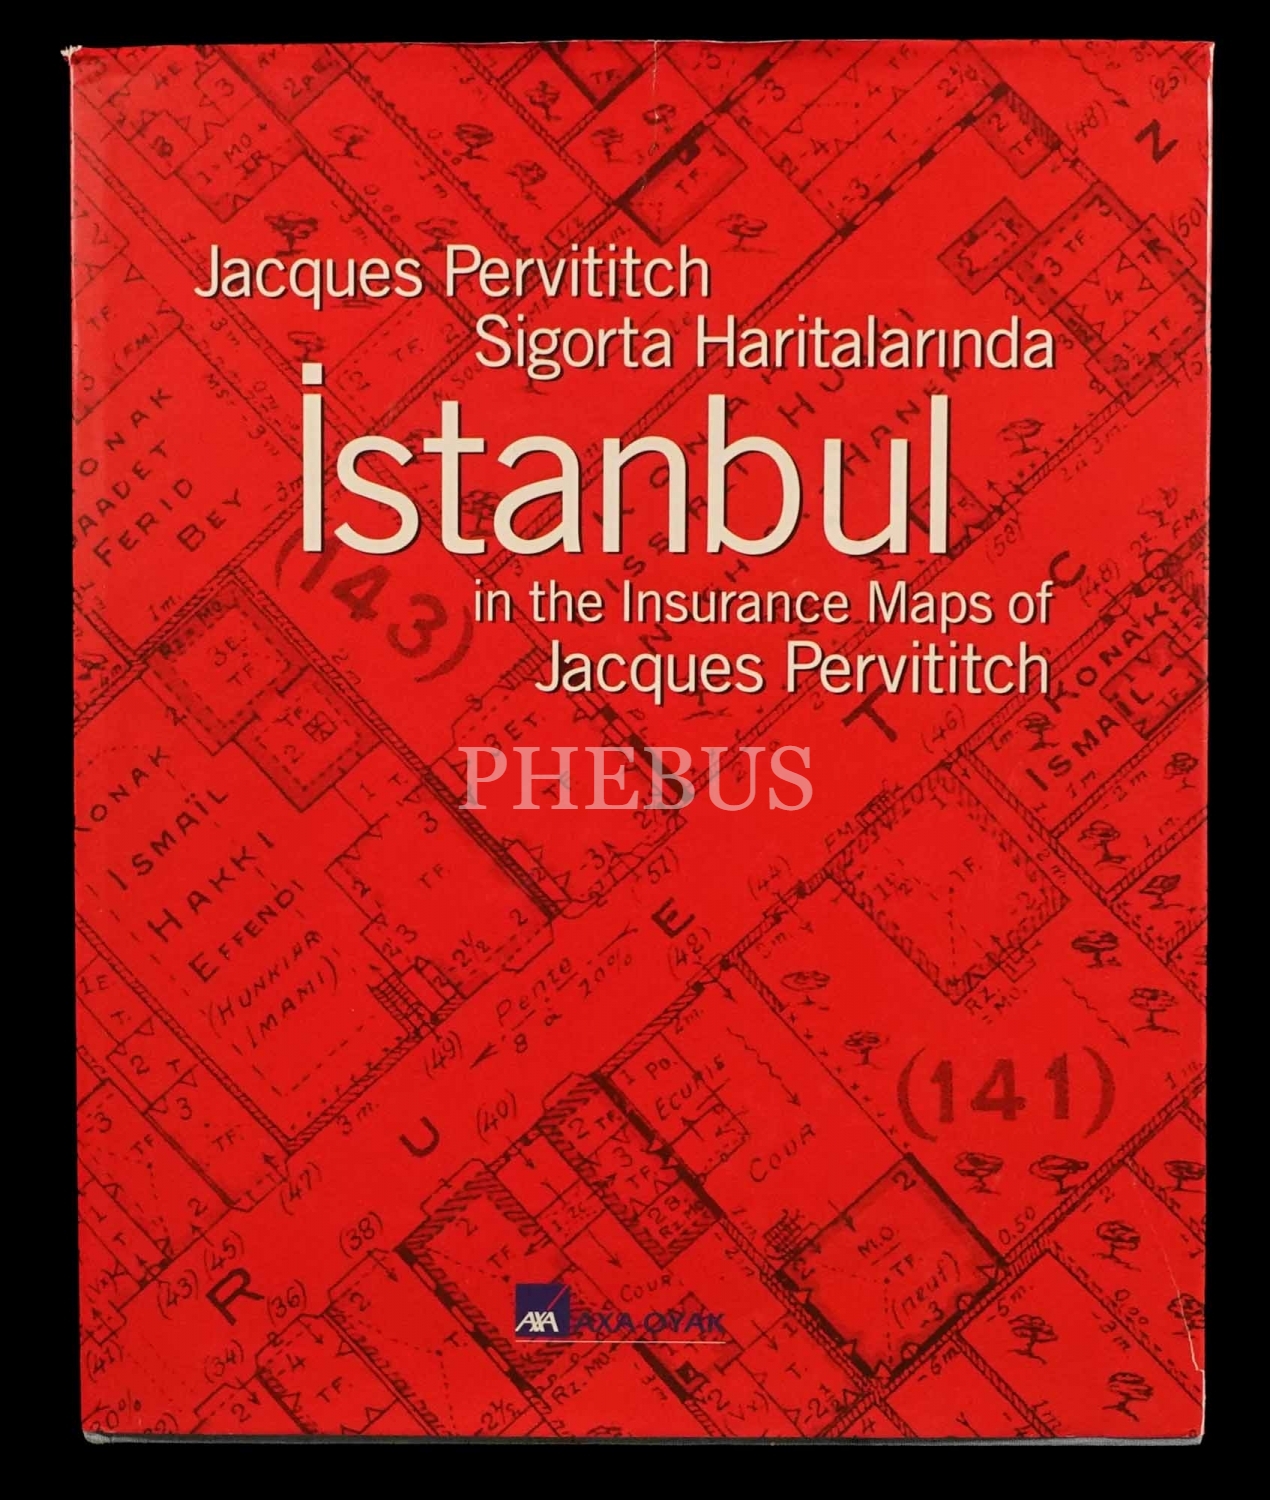 JACQUES PERVITITCH HARİTALARINDA İSTANBUL ( Istanbul in the Insurance Maps of Jacques Pervititch), (Proje Koordinatörleri: Seden Ersoy & Çağatay Anadol), Türkiye Ekonomik ve Toplumsal Tarih Vakfı & Axa Oyak, 338 sayfa, 32x39 cm...